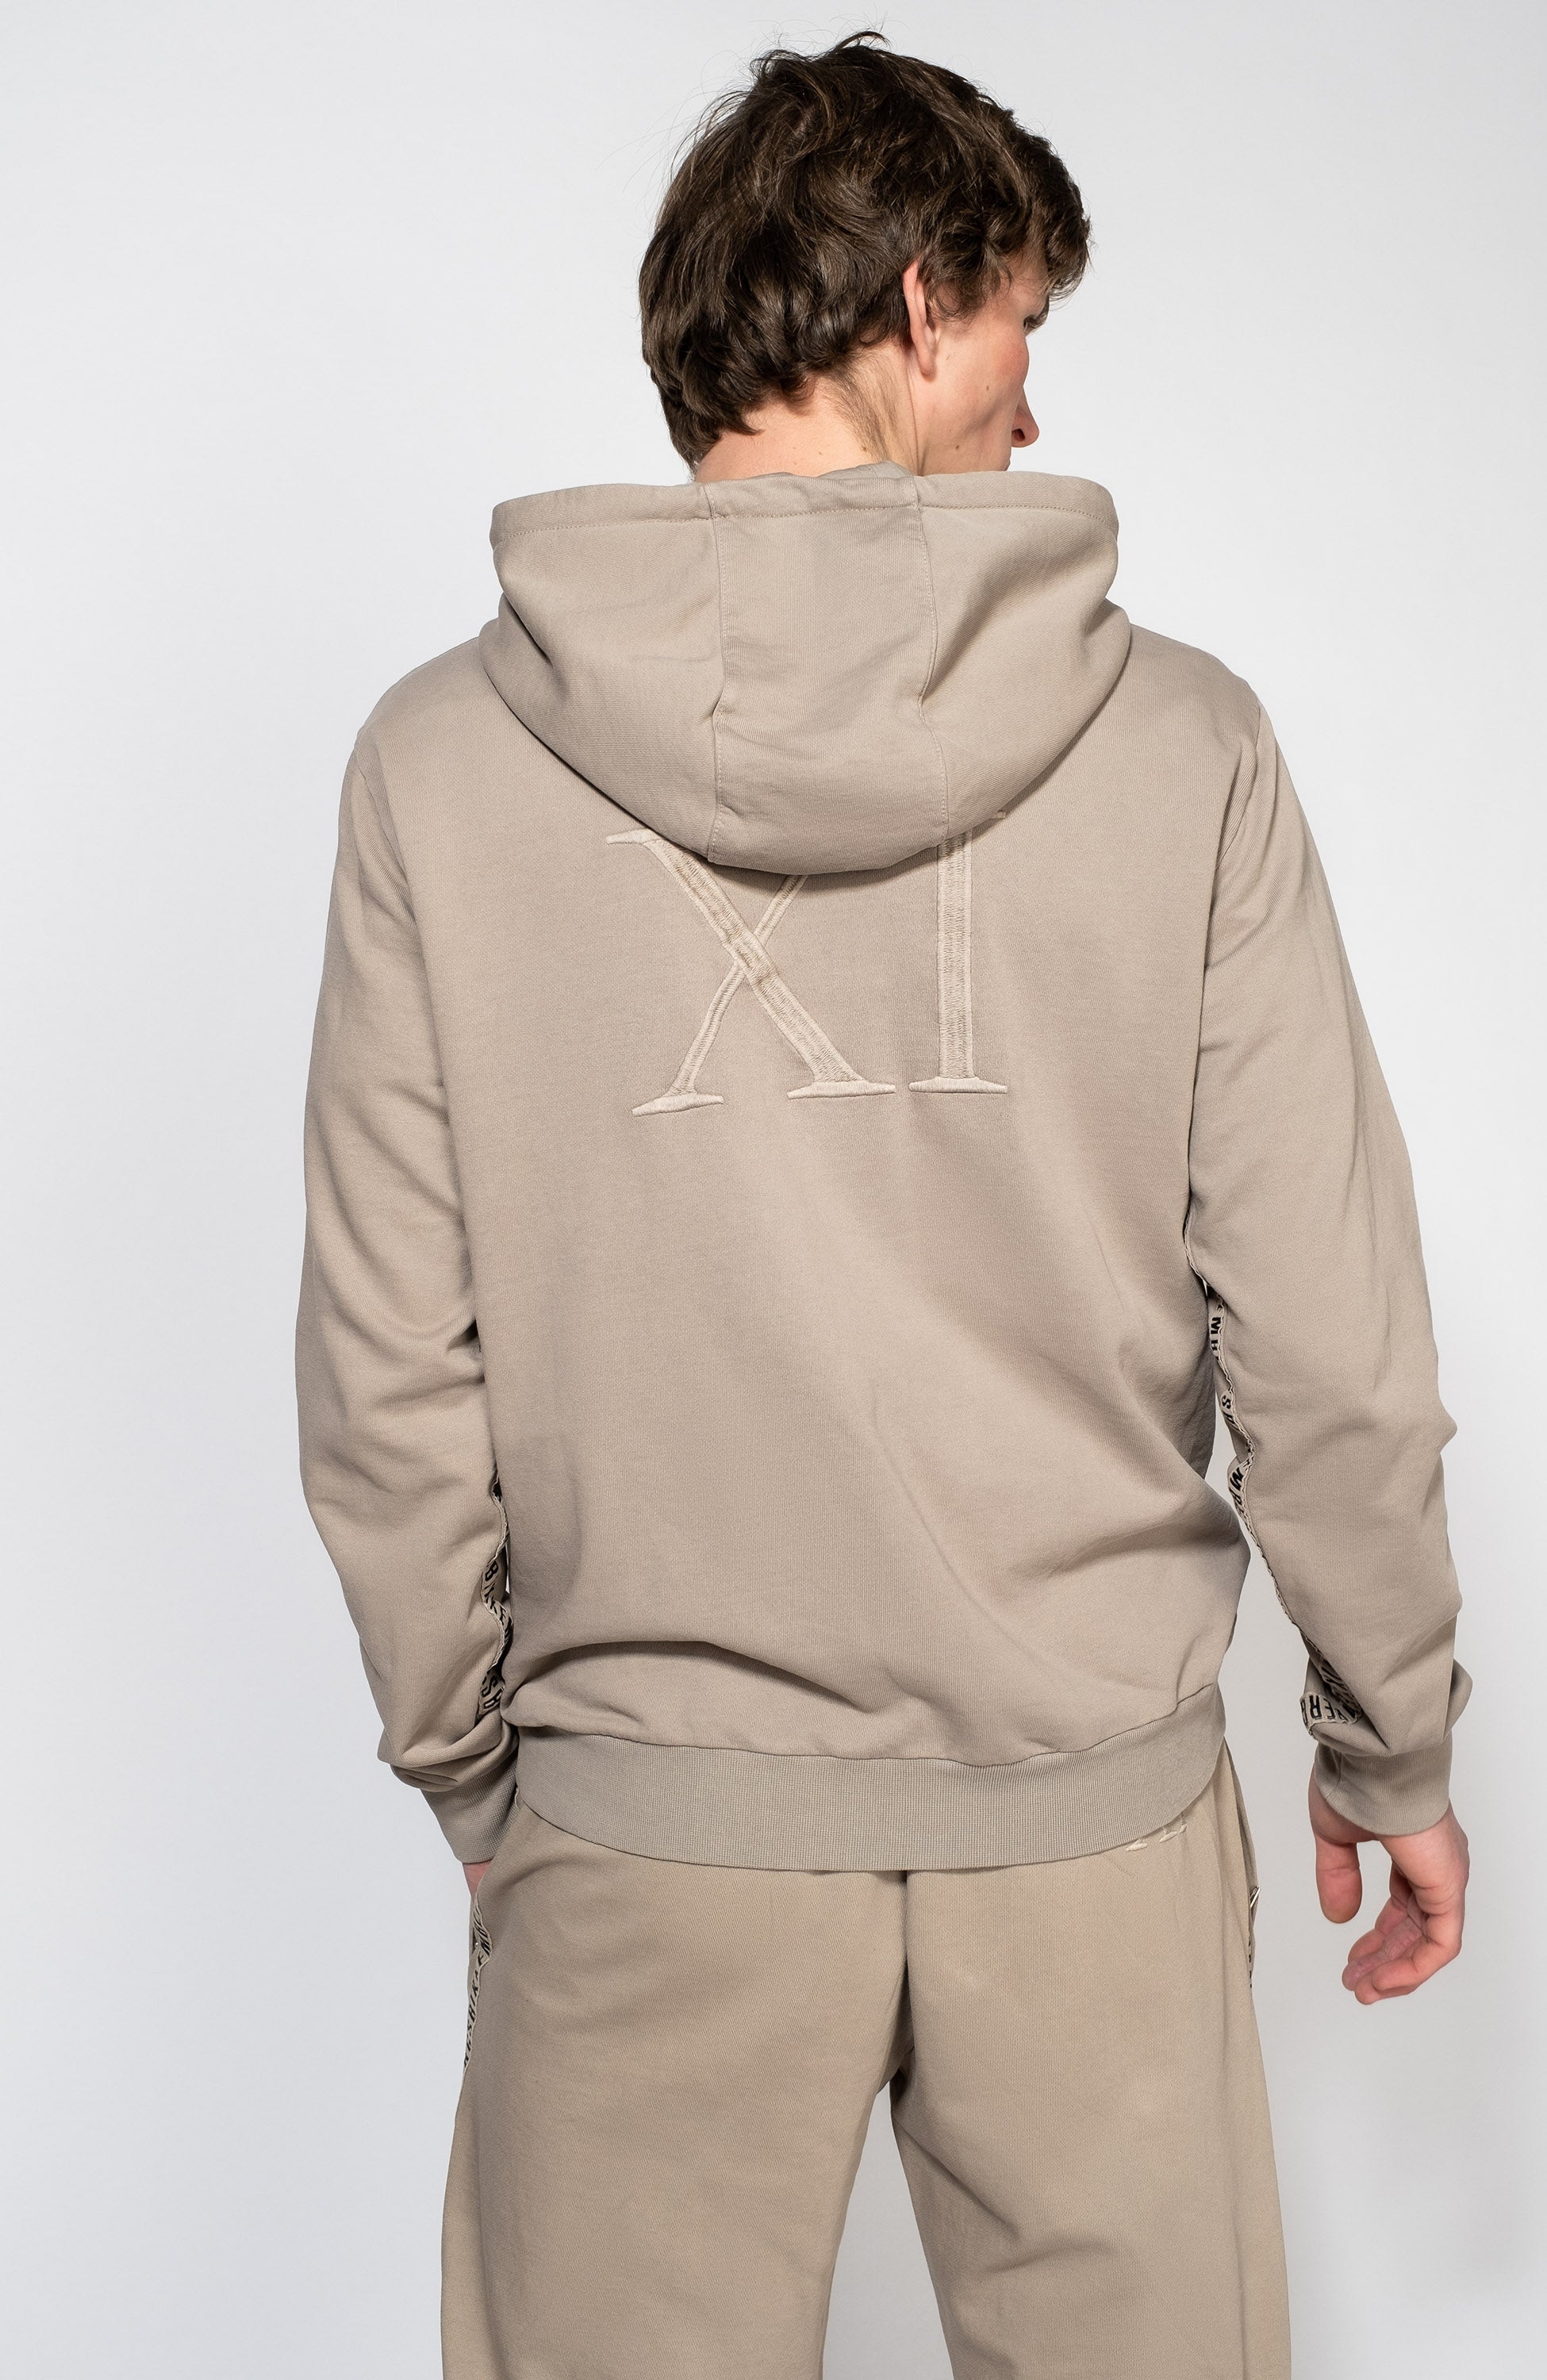 Embroidered hooded sweatshirt